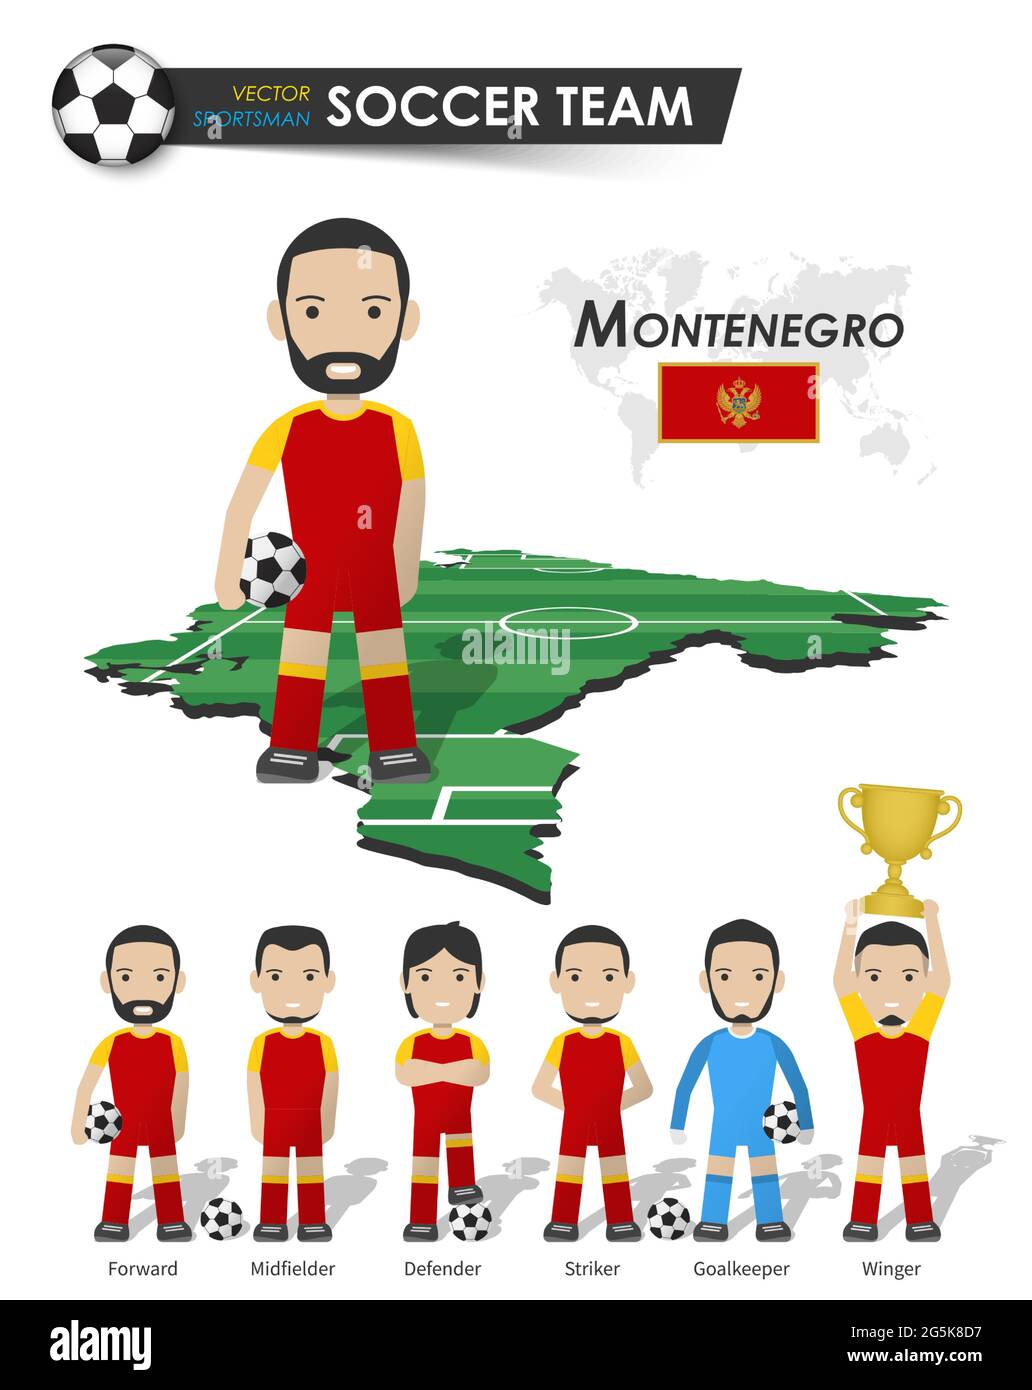 Montenegrinische Fußballnationalmannschaft . Fußballspieler mit Sporttrikot stehen auf Perspective Field Country Map und Weltkarte . Set von Fußballspieler-Position Stock Vektor